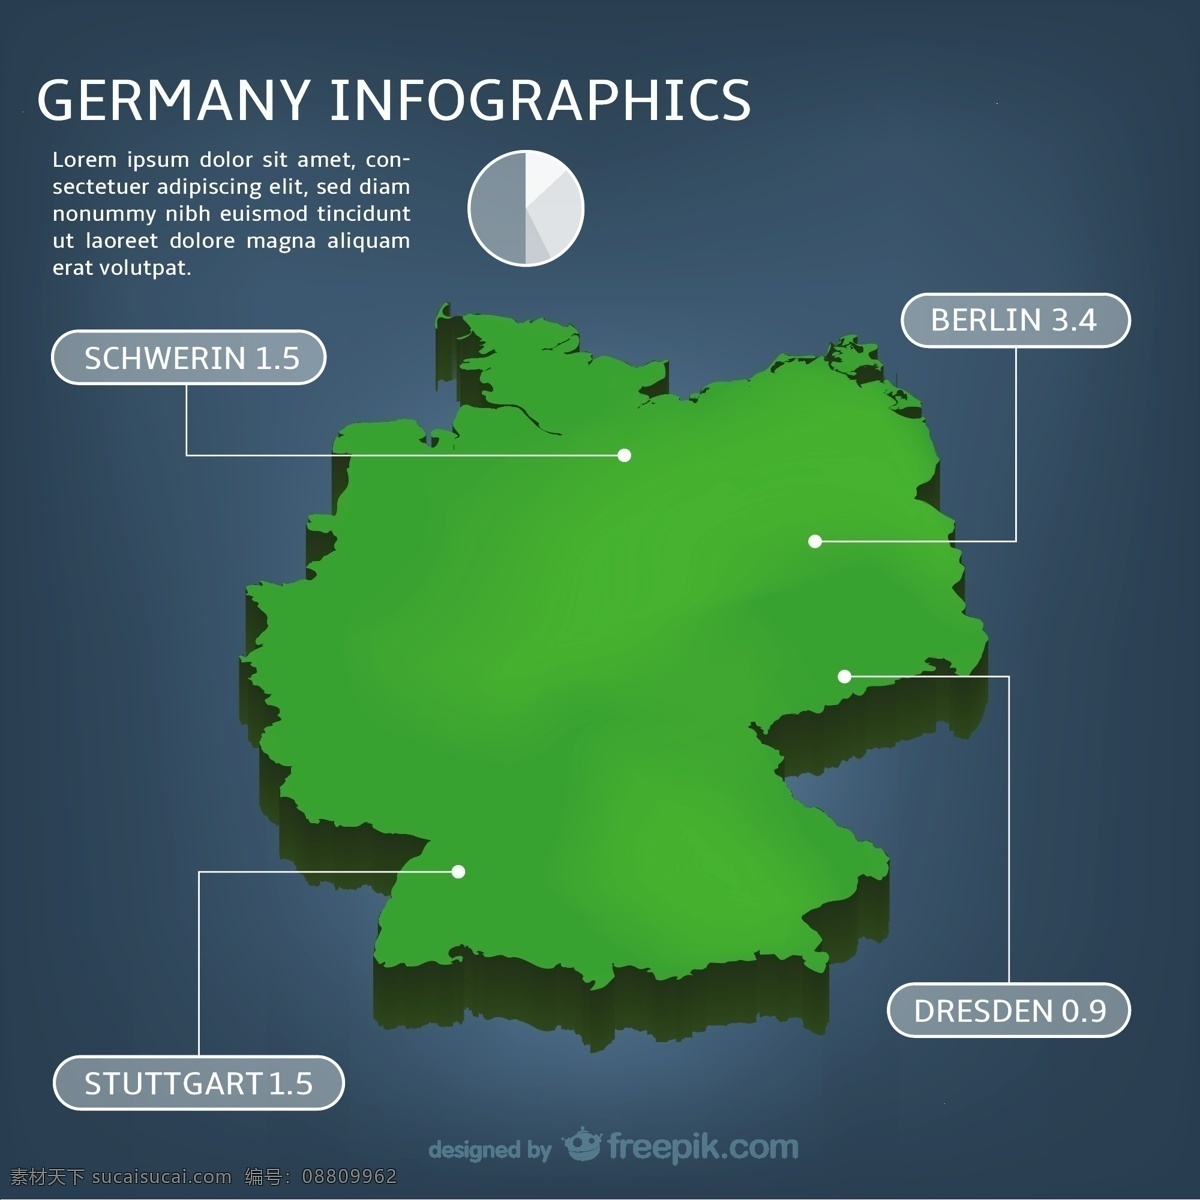 德国 inphographics 图表 旅行 地图 模板 图形 信息 欧洲 图表模板 绿色